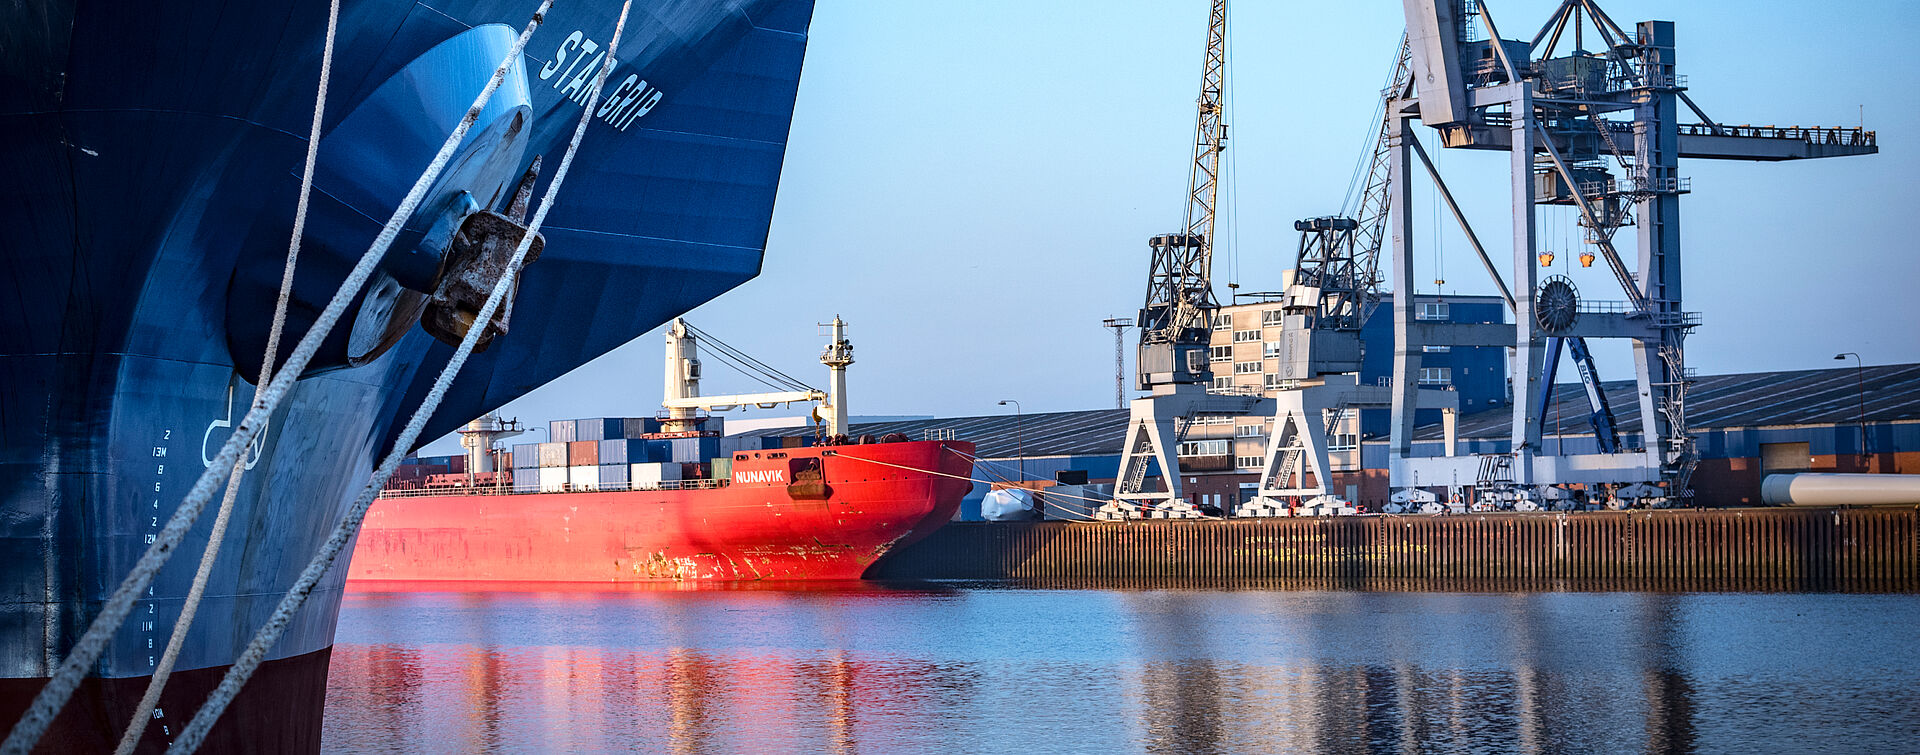 Ein Schiff mit rotem Unterschiff liegt im Hafenbecken an der Kaje. rechts Kräne oder Brücken.